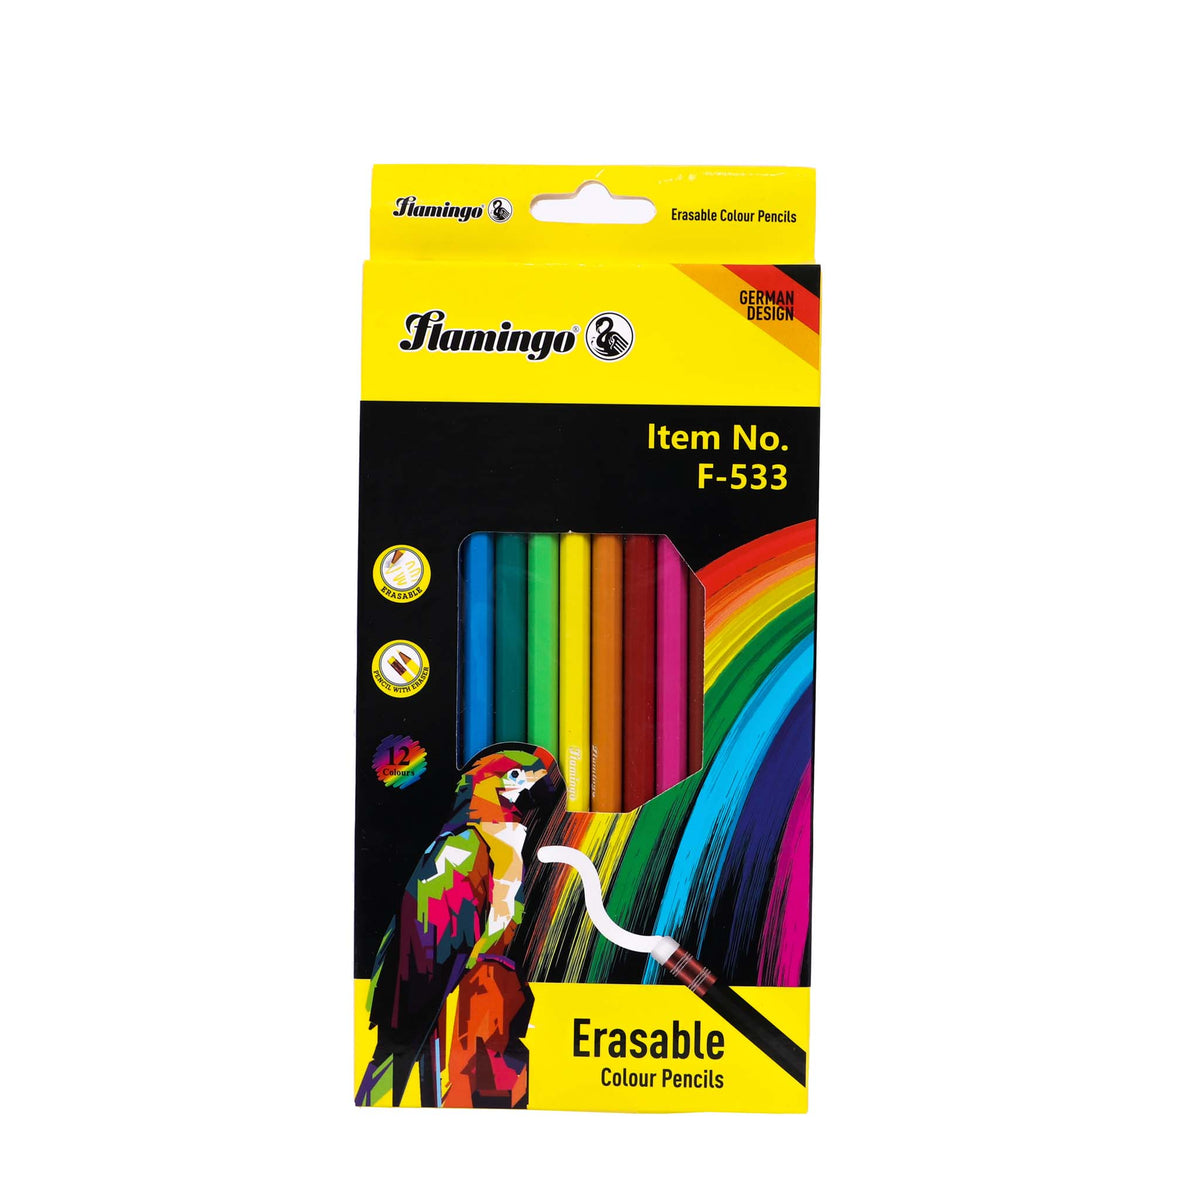 Erasable Colour Pencils F-533